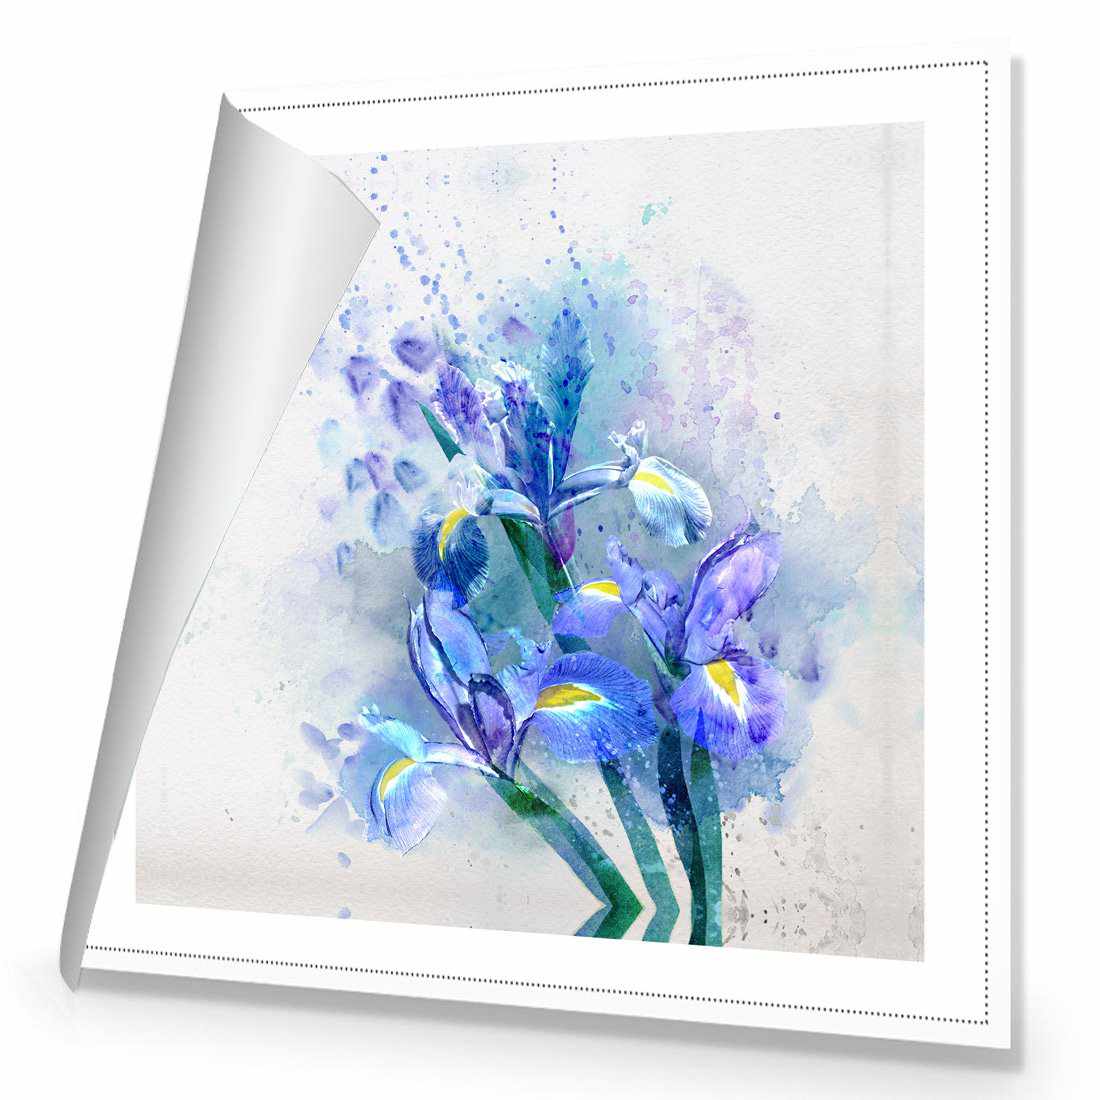 Iris Rain Canvas Art-Canvas-Wall Art Designs-30x30cm-Rolled Canvas-Wall Art Designs